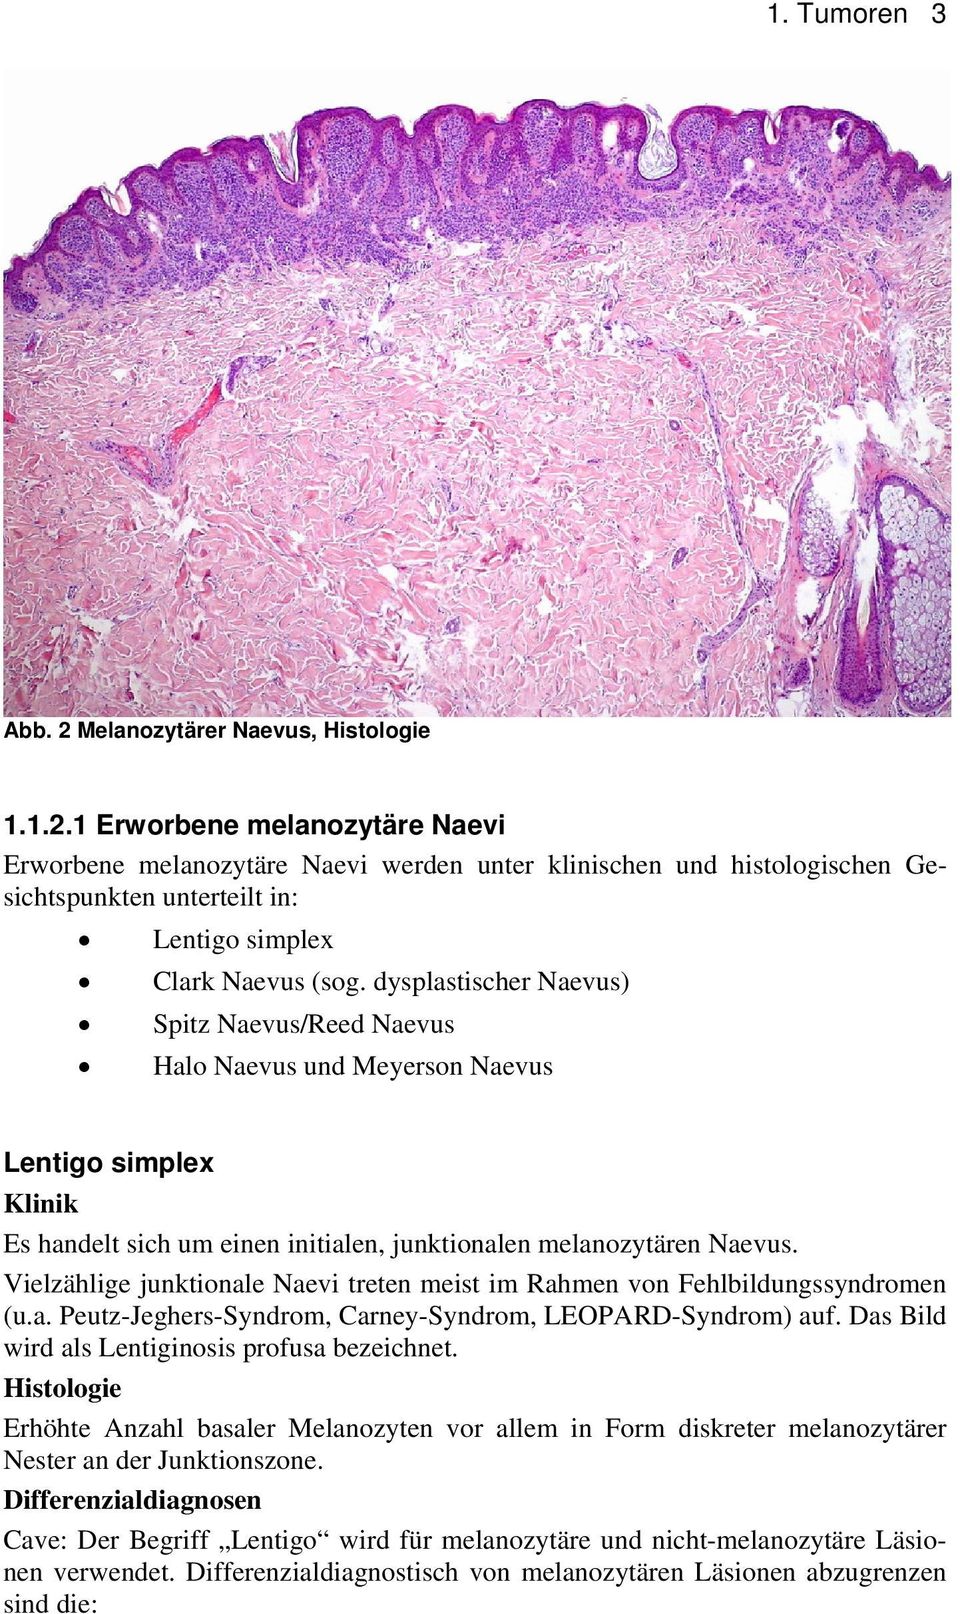 Vielzählige junktionale Naevi treten meist im Rahmen von Fehlbildungssyndromen (u.a. Peutz-Jeghers-Syndrom, Carney-Syndrom, LEOPARD-Syndrom) auf. Das Bild wird als Lentiginosis profusa bezeichnet.